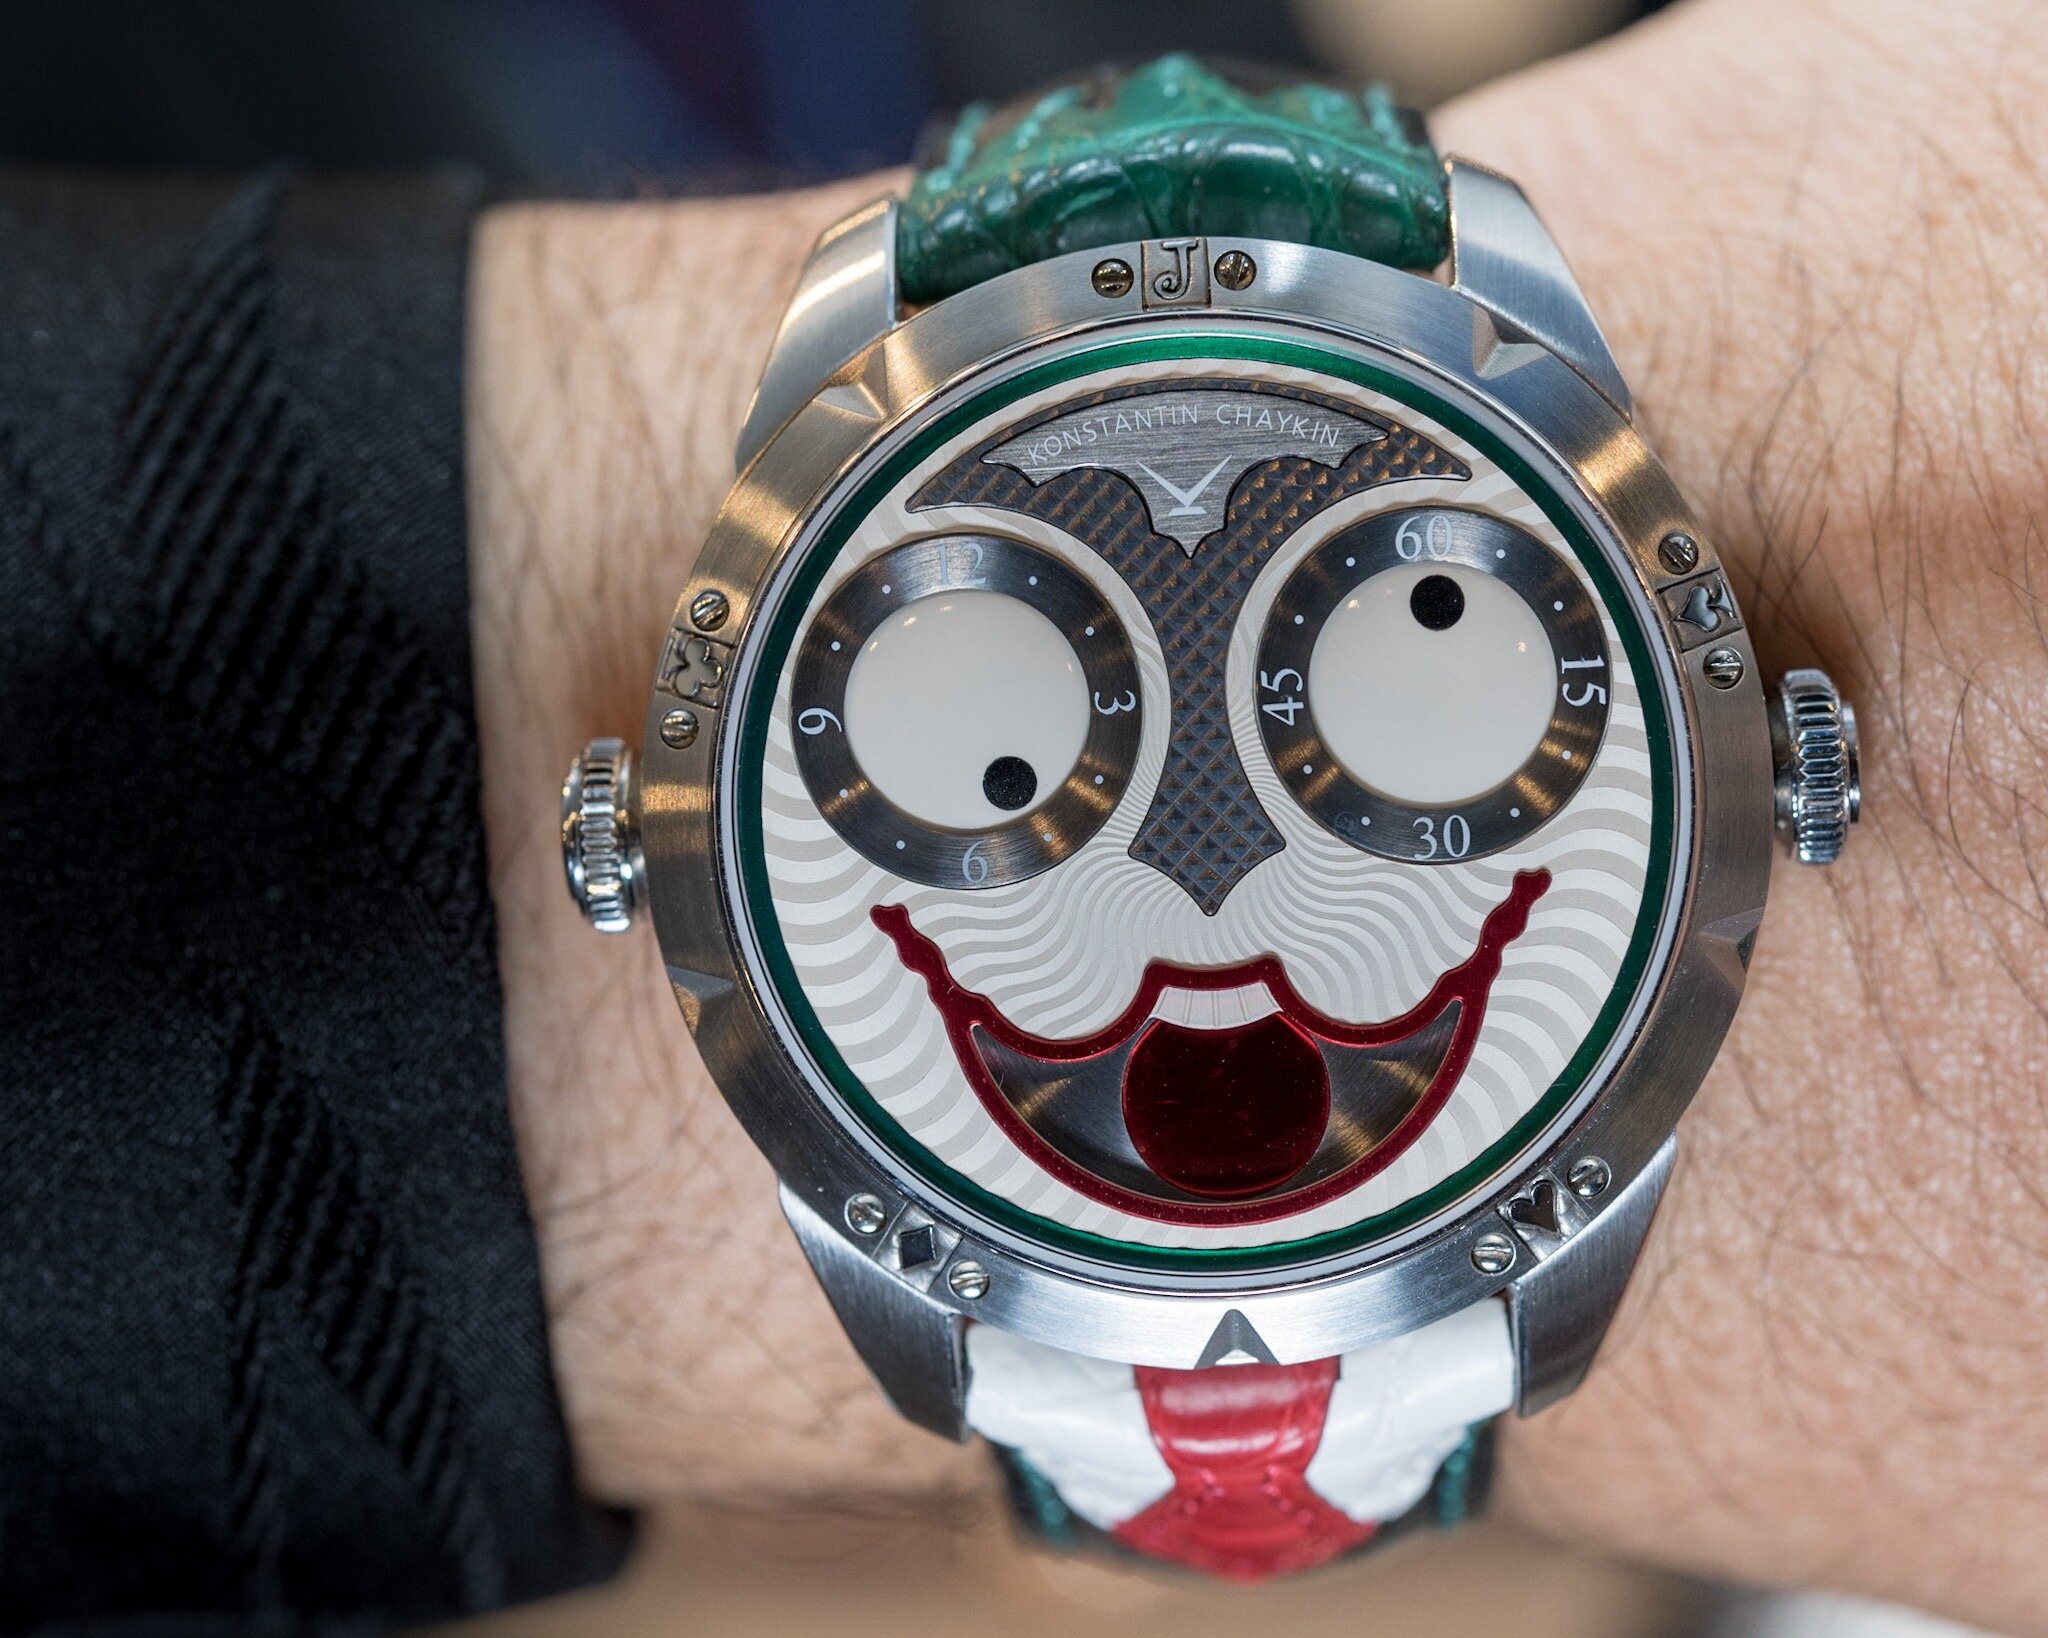 Original Joker watch